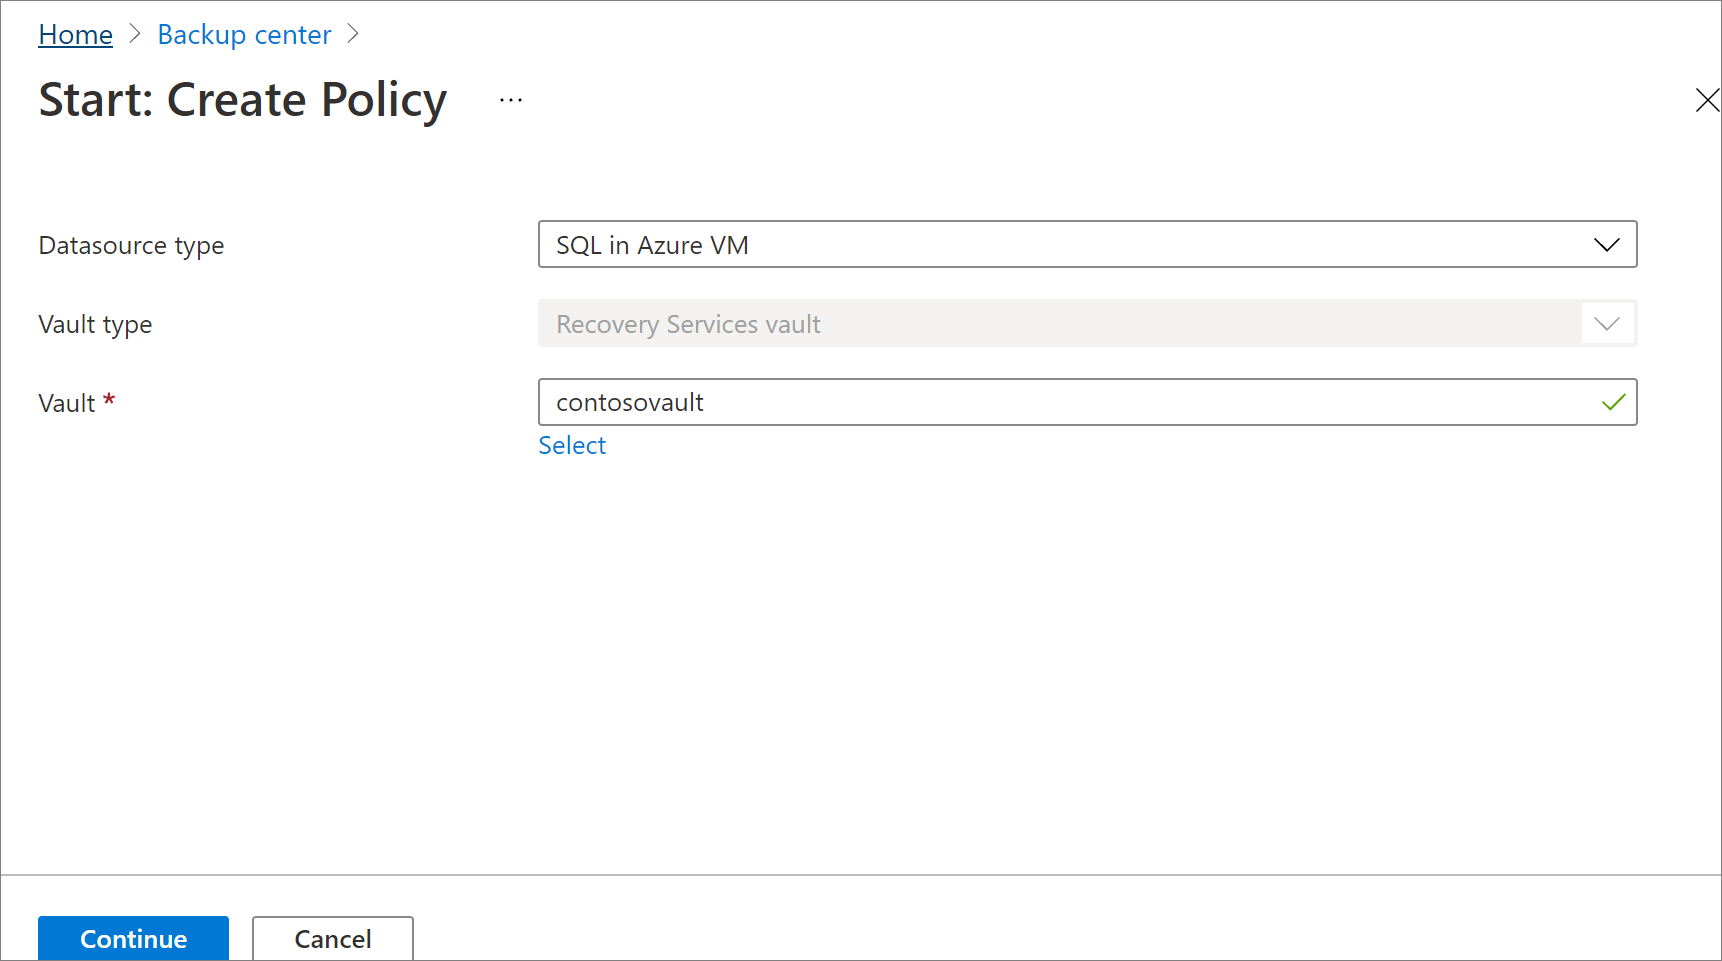 Captura de tela mostrando para escolher um tipo de política para a nova política de backup.